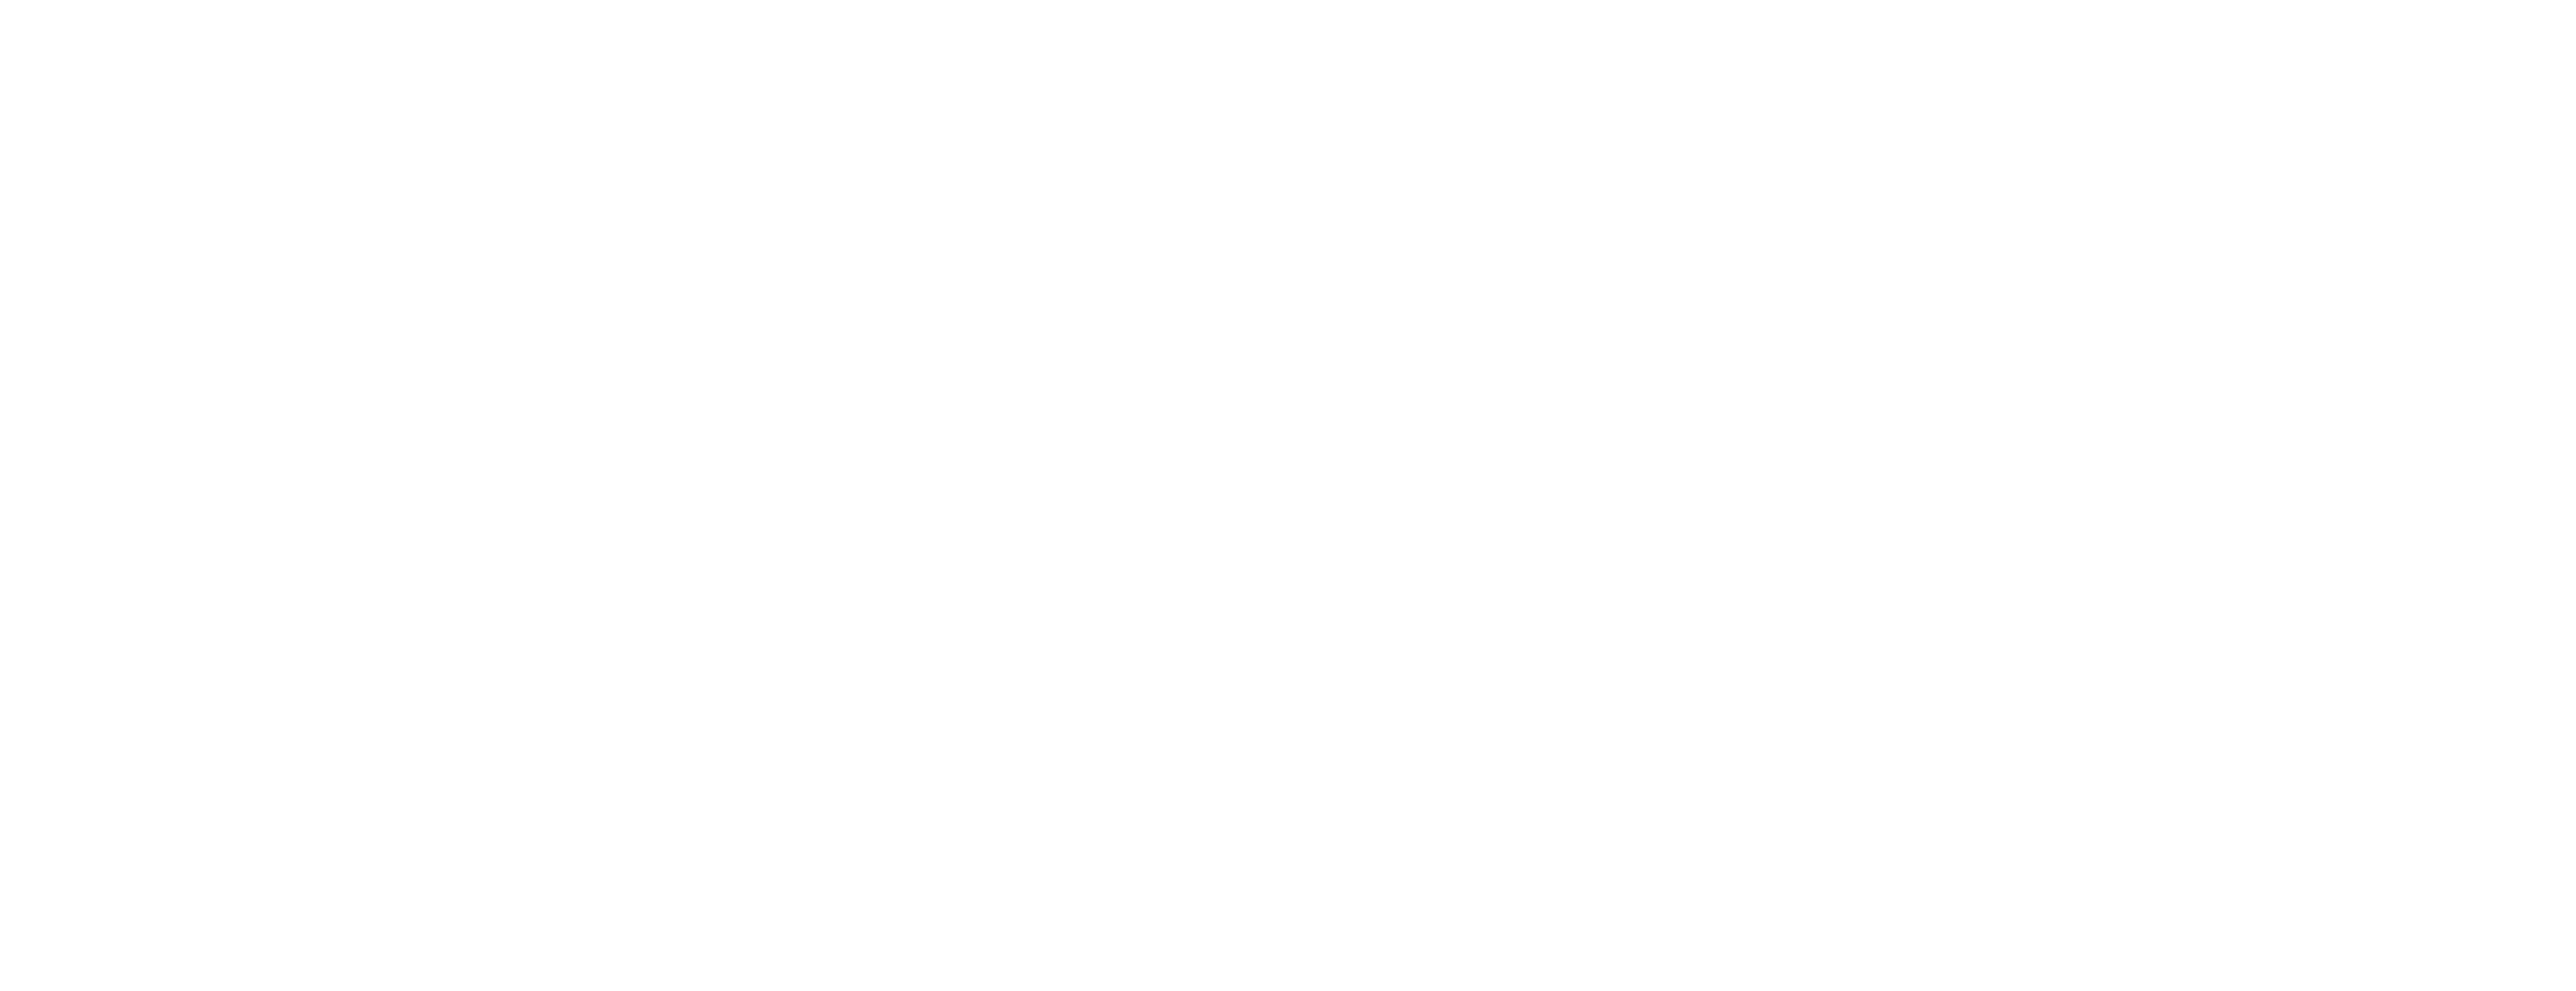 CIRCON